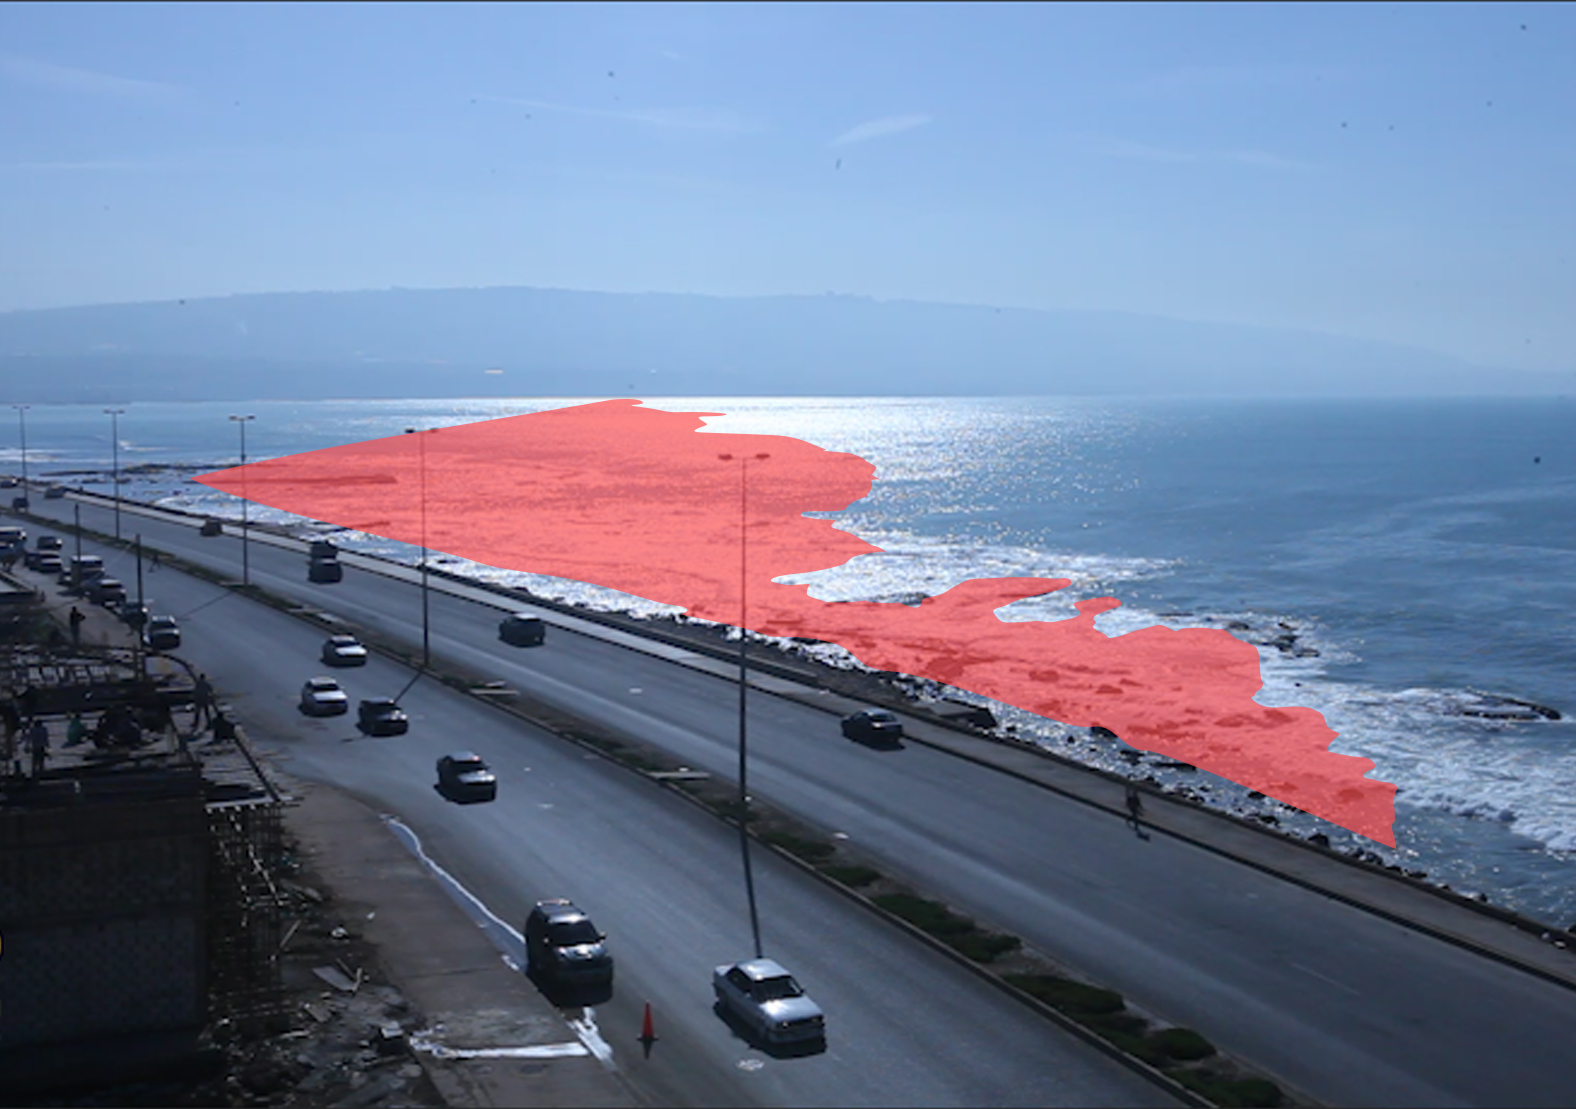 العقار الوهمي في الميناء (1): لماذا وكيف تخلّت الدولة اللبنانية عن أملاكها العامّة؟